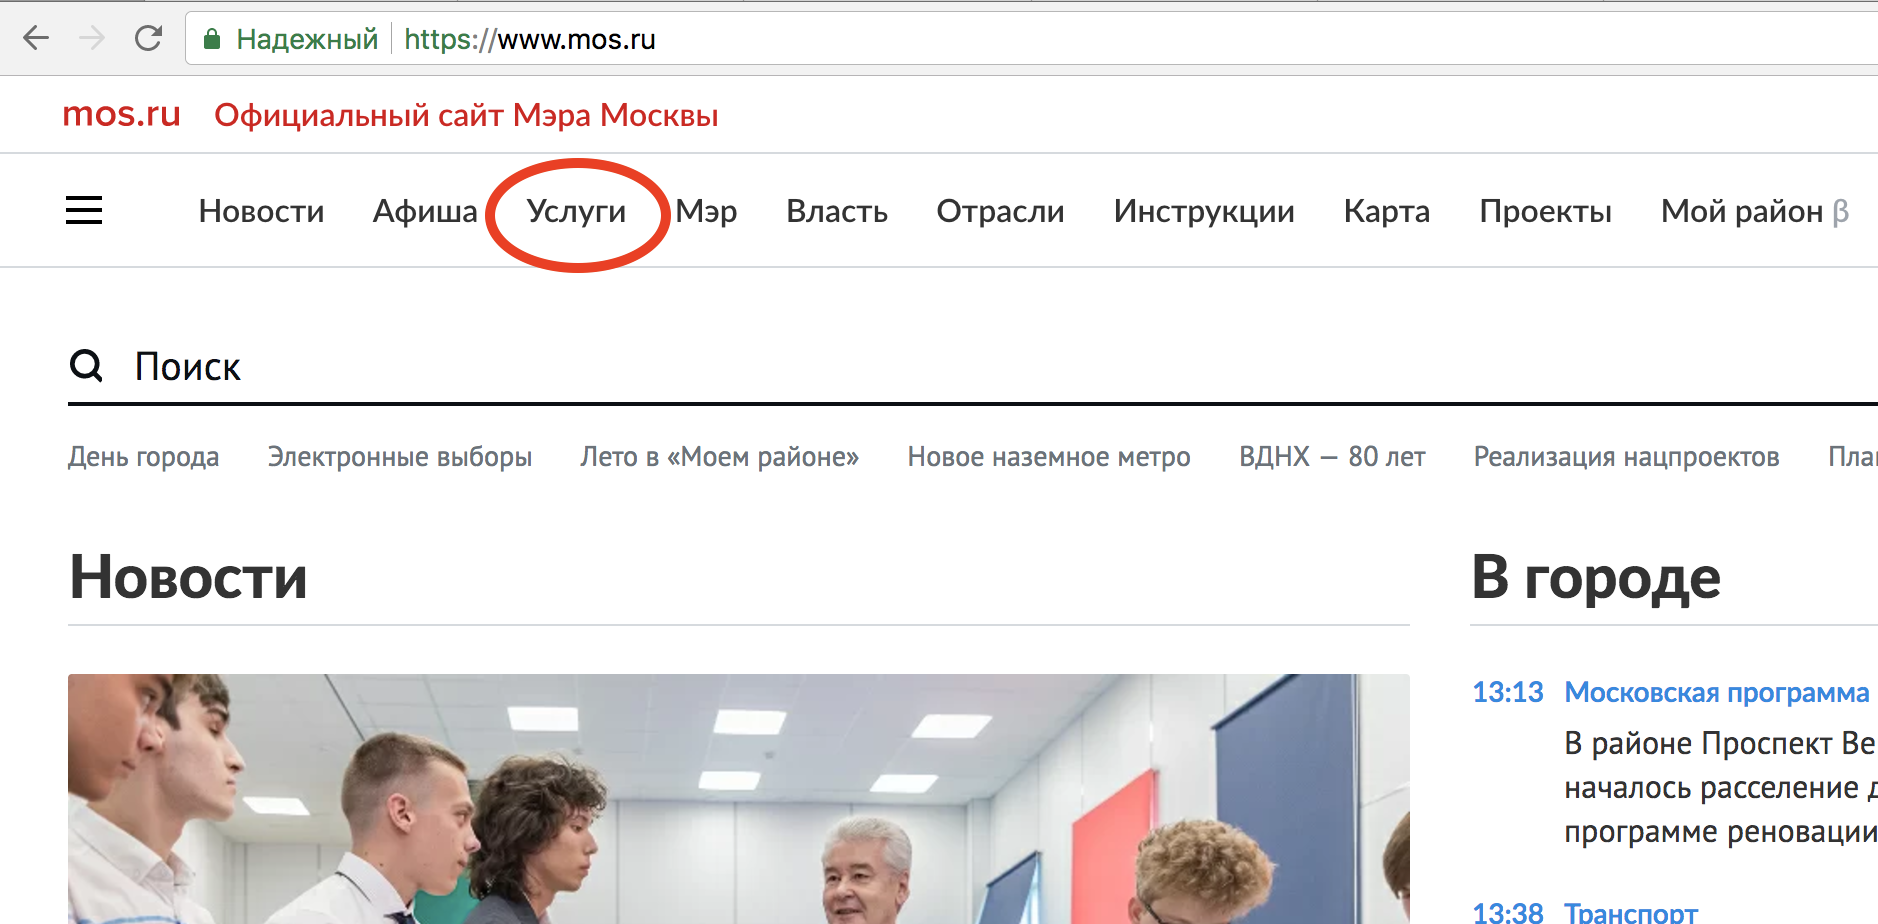 (скриншот с сайта mos.ru)